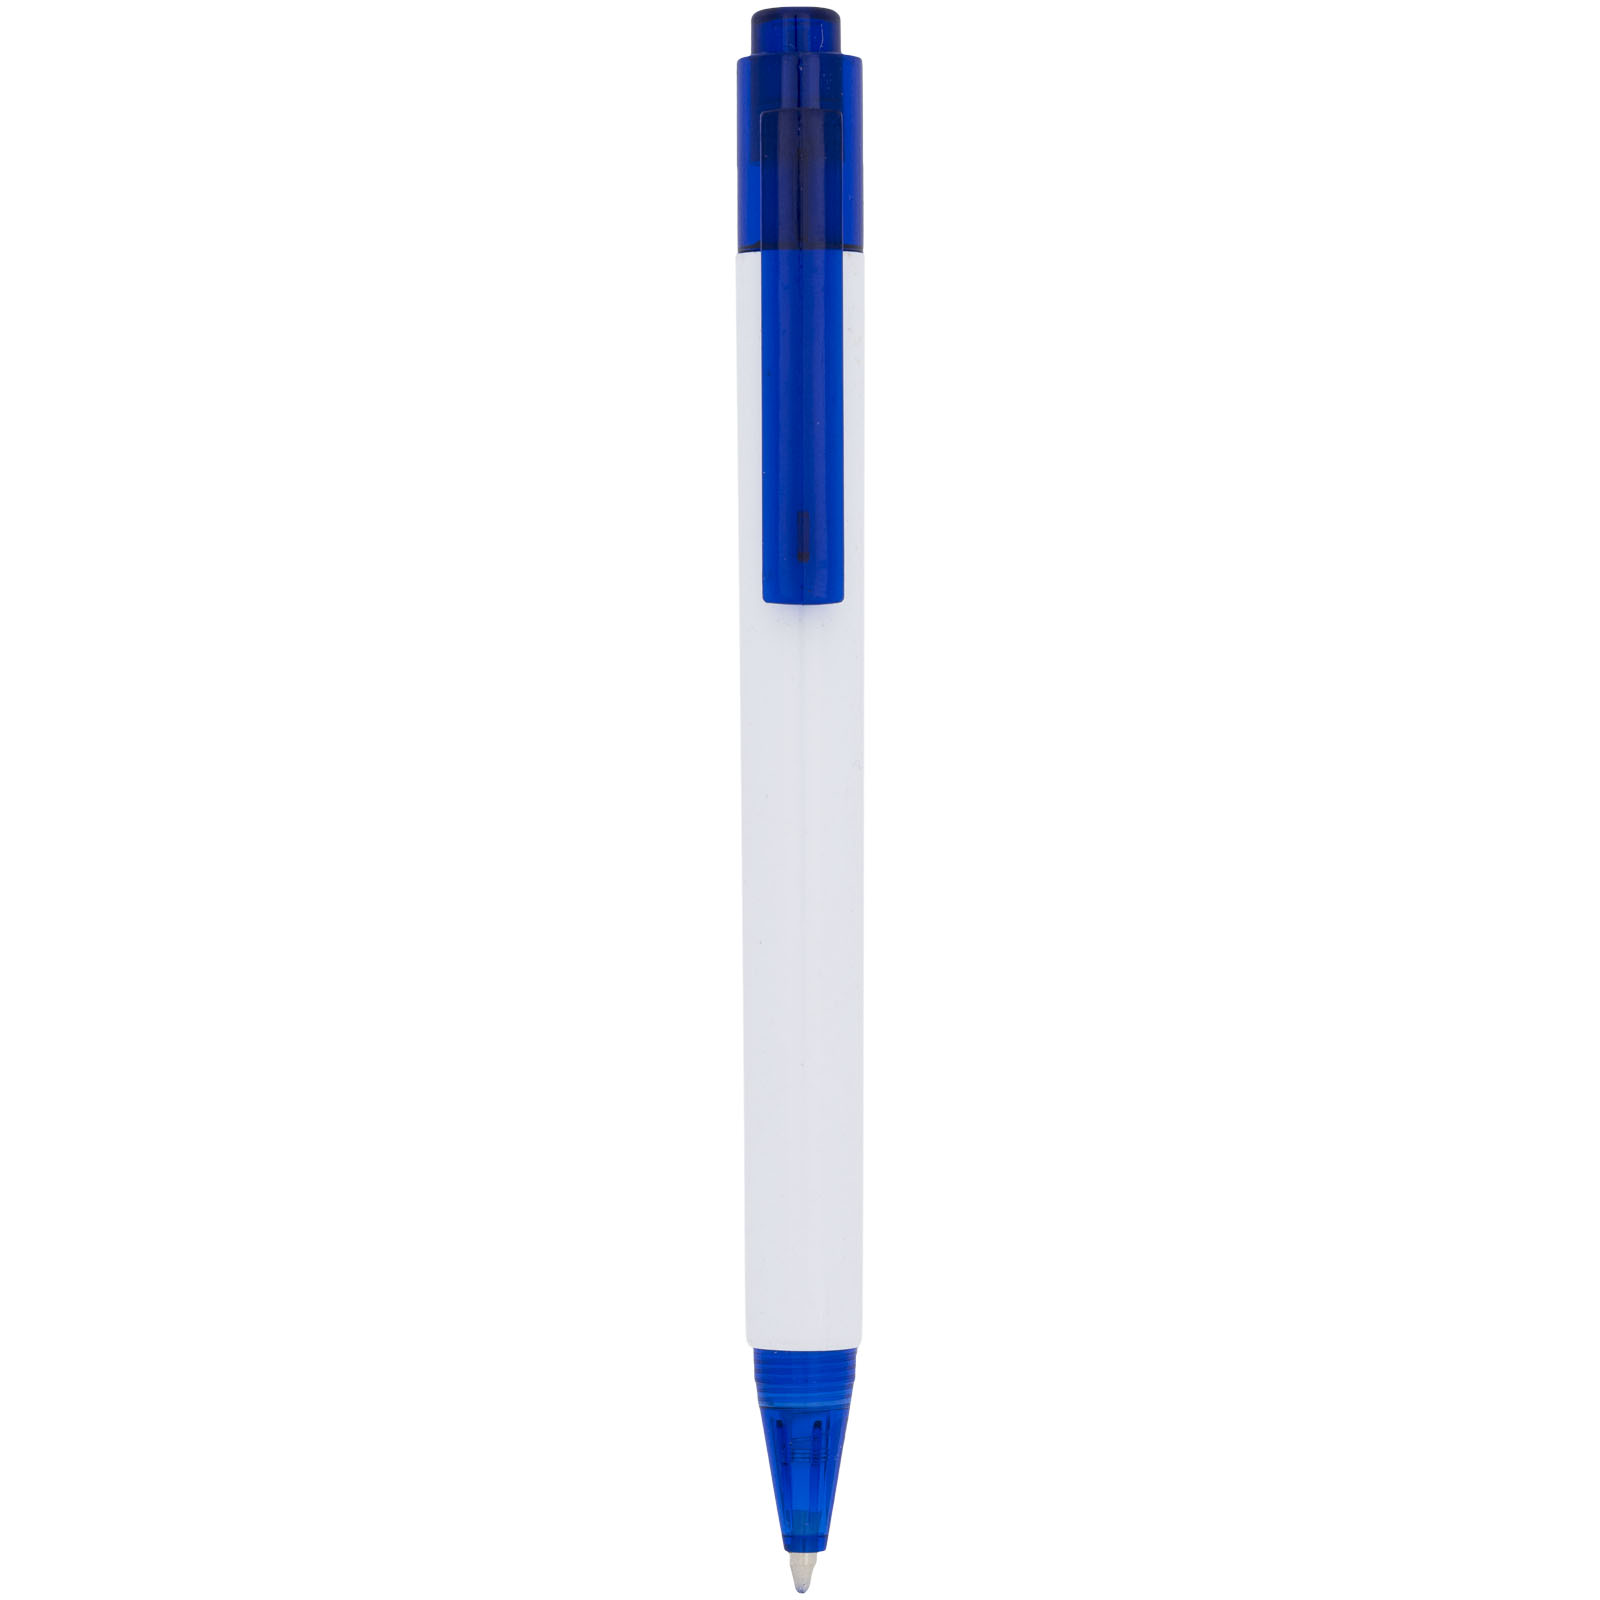 Pens & Writing - Calypso ballpoint pen